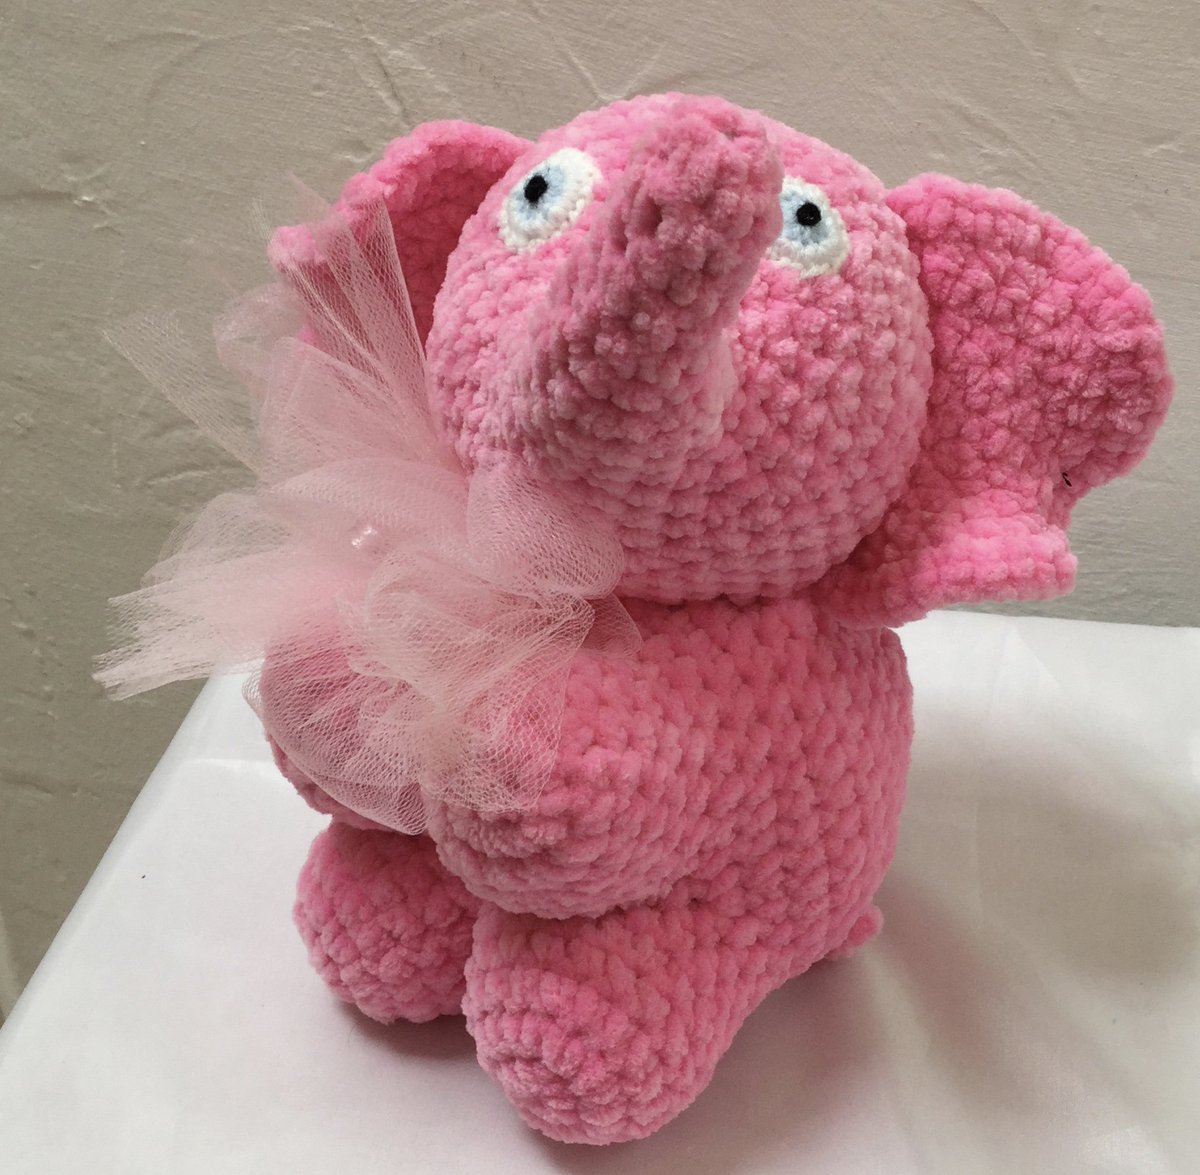 And Crocheted Elephant Rosa!
#babyshower
#1stbirthday
#babygirl
#pinkelephant
#cuddlytoy
#knittedsofttoy
#babygift
#handcrochetedelli
#birthdaygift
#christeninggift
#softtoyelephant
#elephantgift
#amigurumihandmade